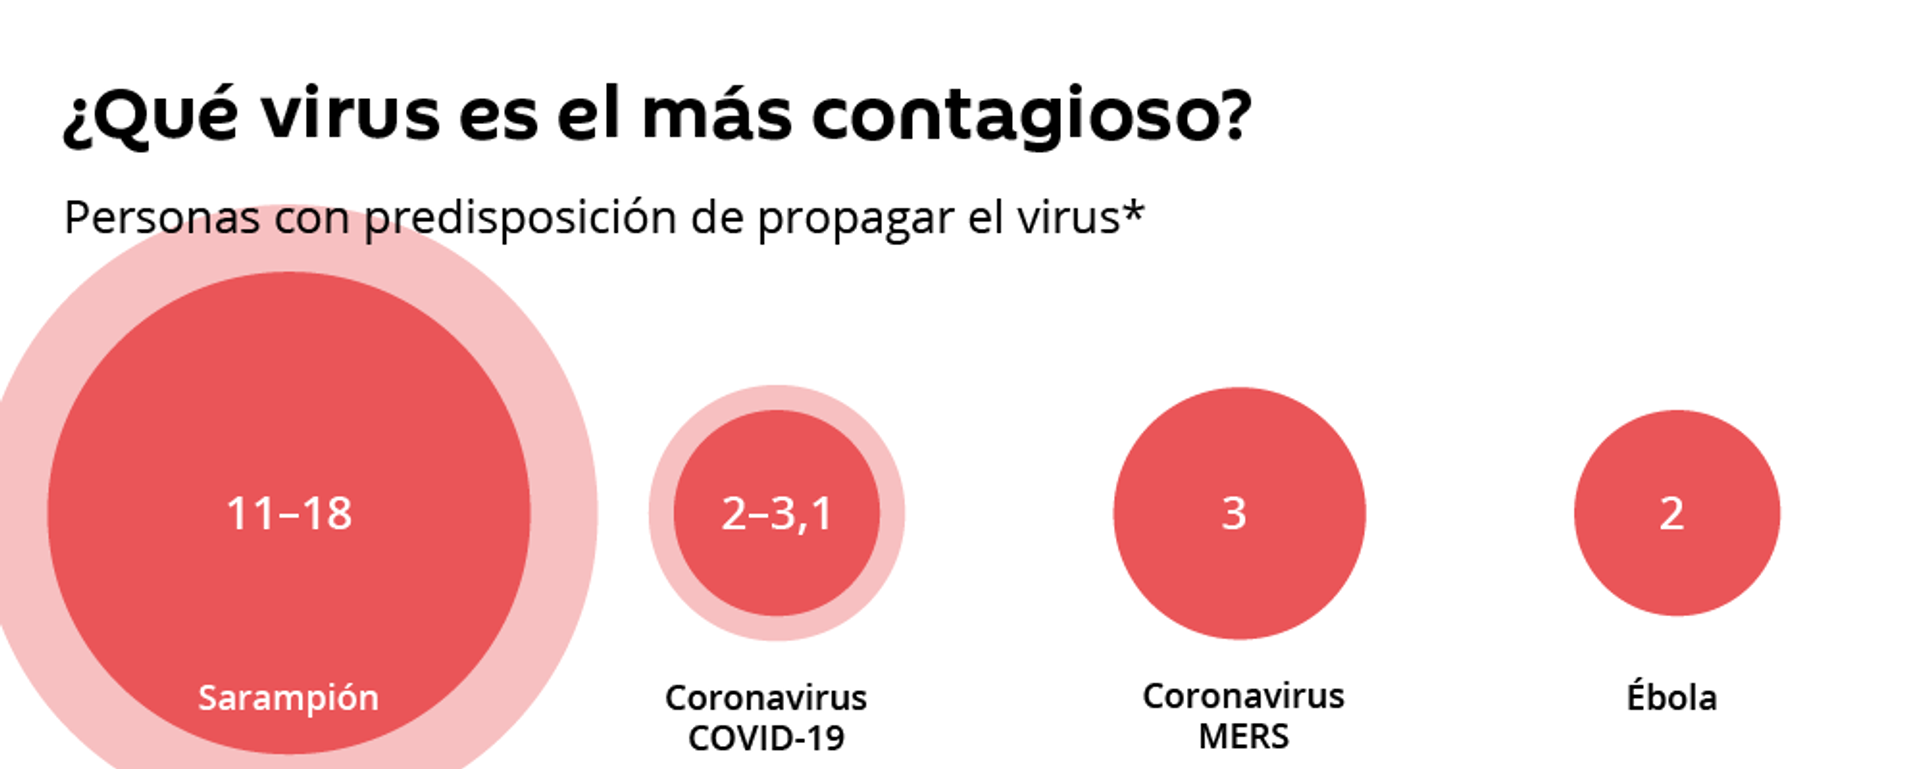 Así es el COVID-19 comparado con otros virus peligrosos - Sputnik Mundo, 1920, 27.03.2020